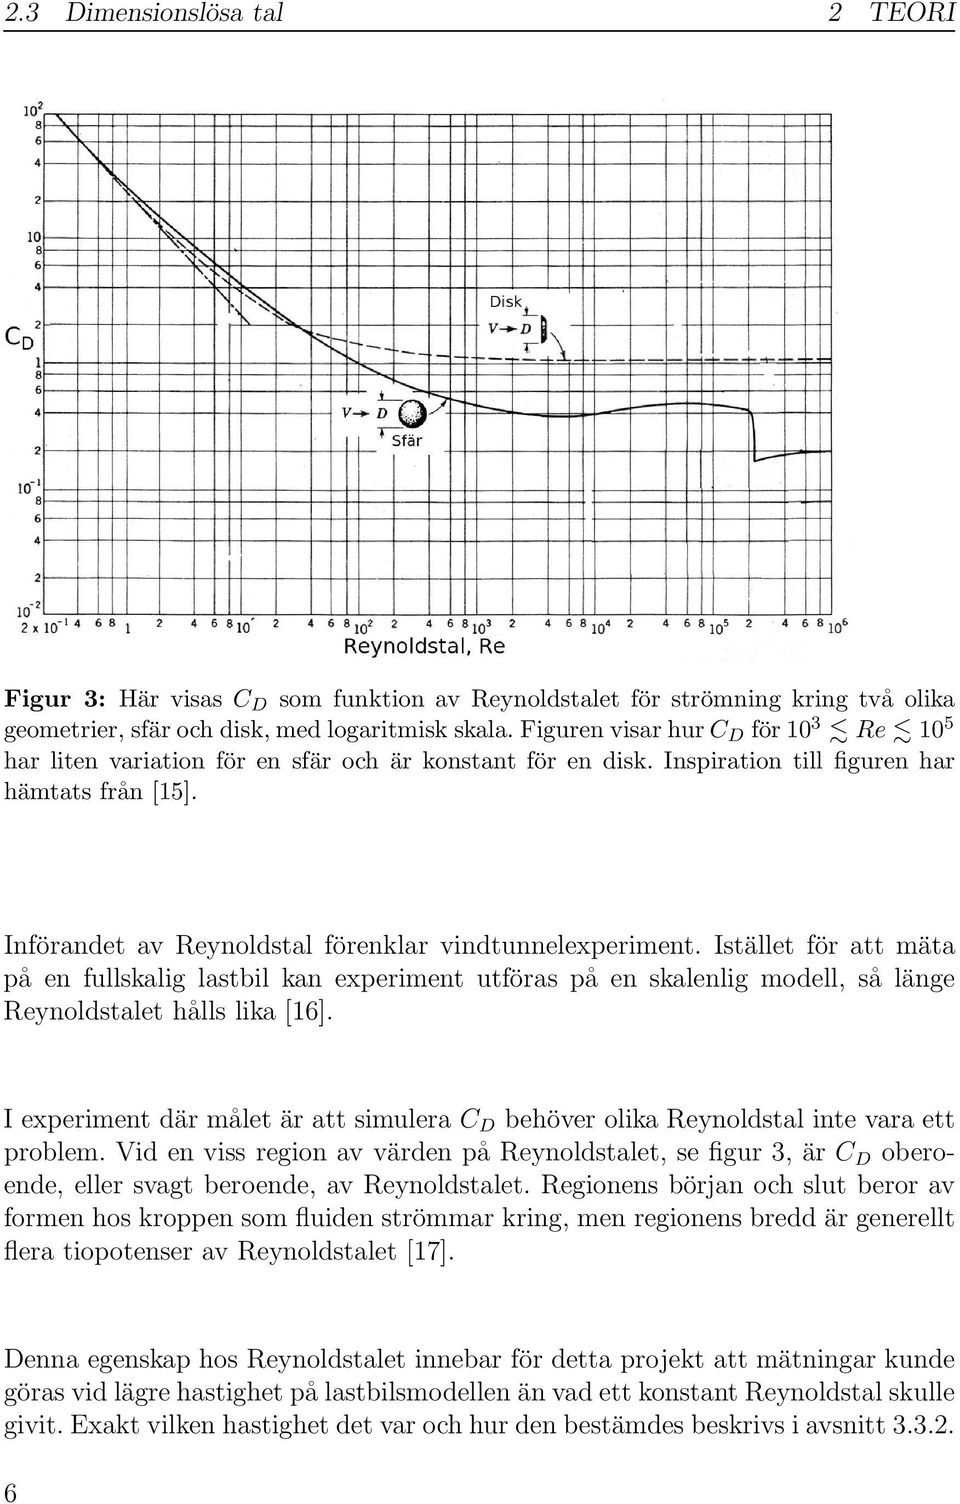 Införandet av Reynoldstal förenklar vindtunnelexperiment. Istället för att mäta på en fullskalig lastbil kan experiment utföras på en skalenlig modell, så länge Reynoldstalet hålls lika [16].